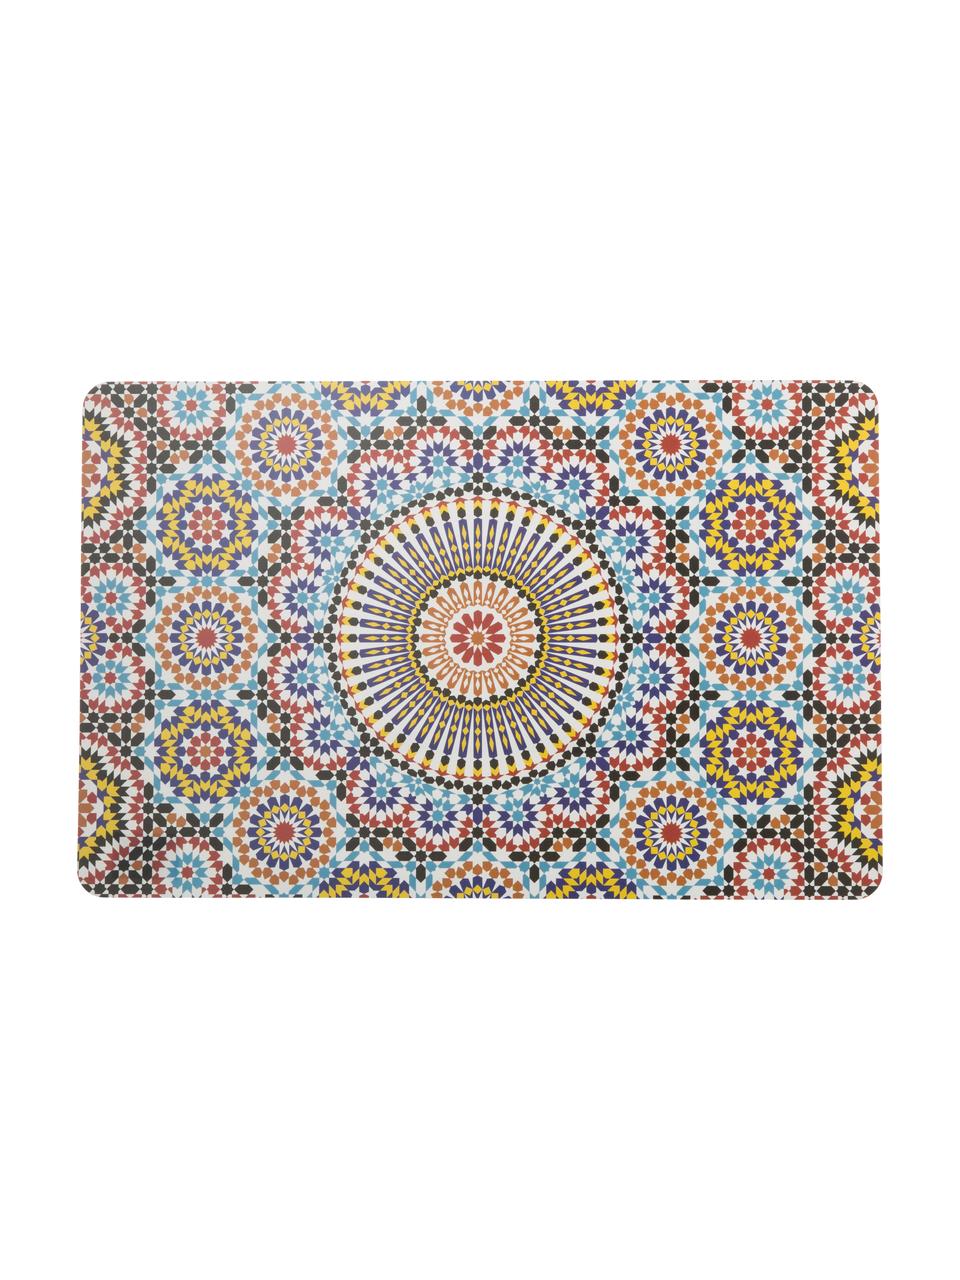 Kunststoff-Tischsets Marrakech, 6er Set, Kunststoff, Mehrfarbig, 28 x 44 cm